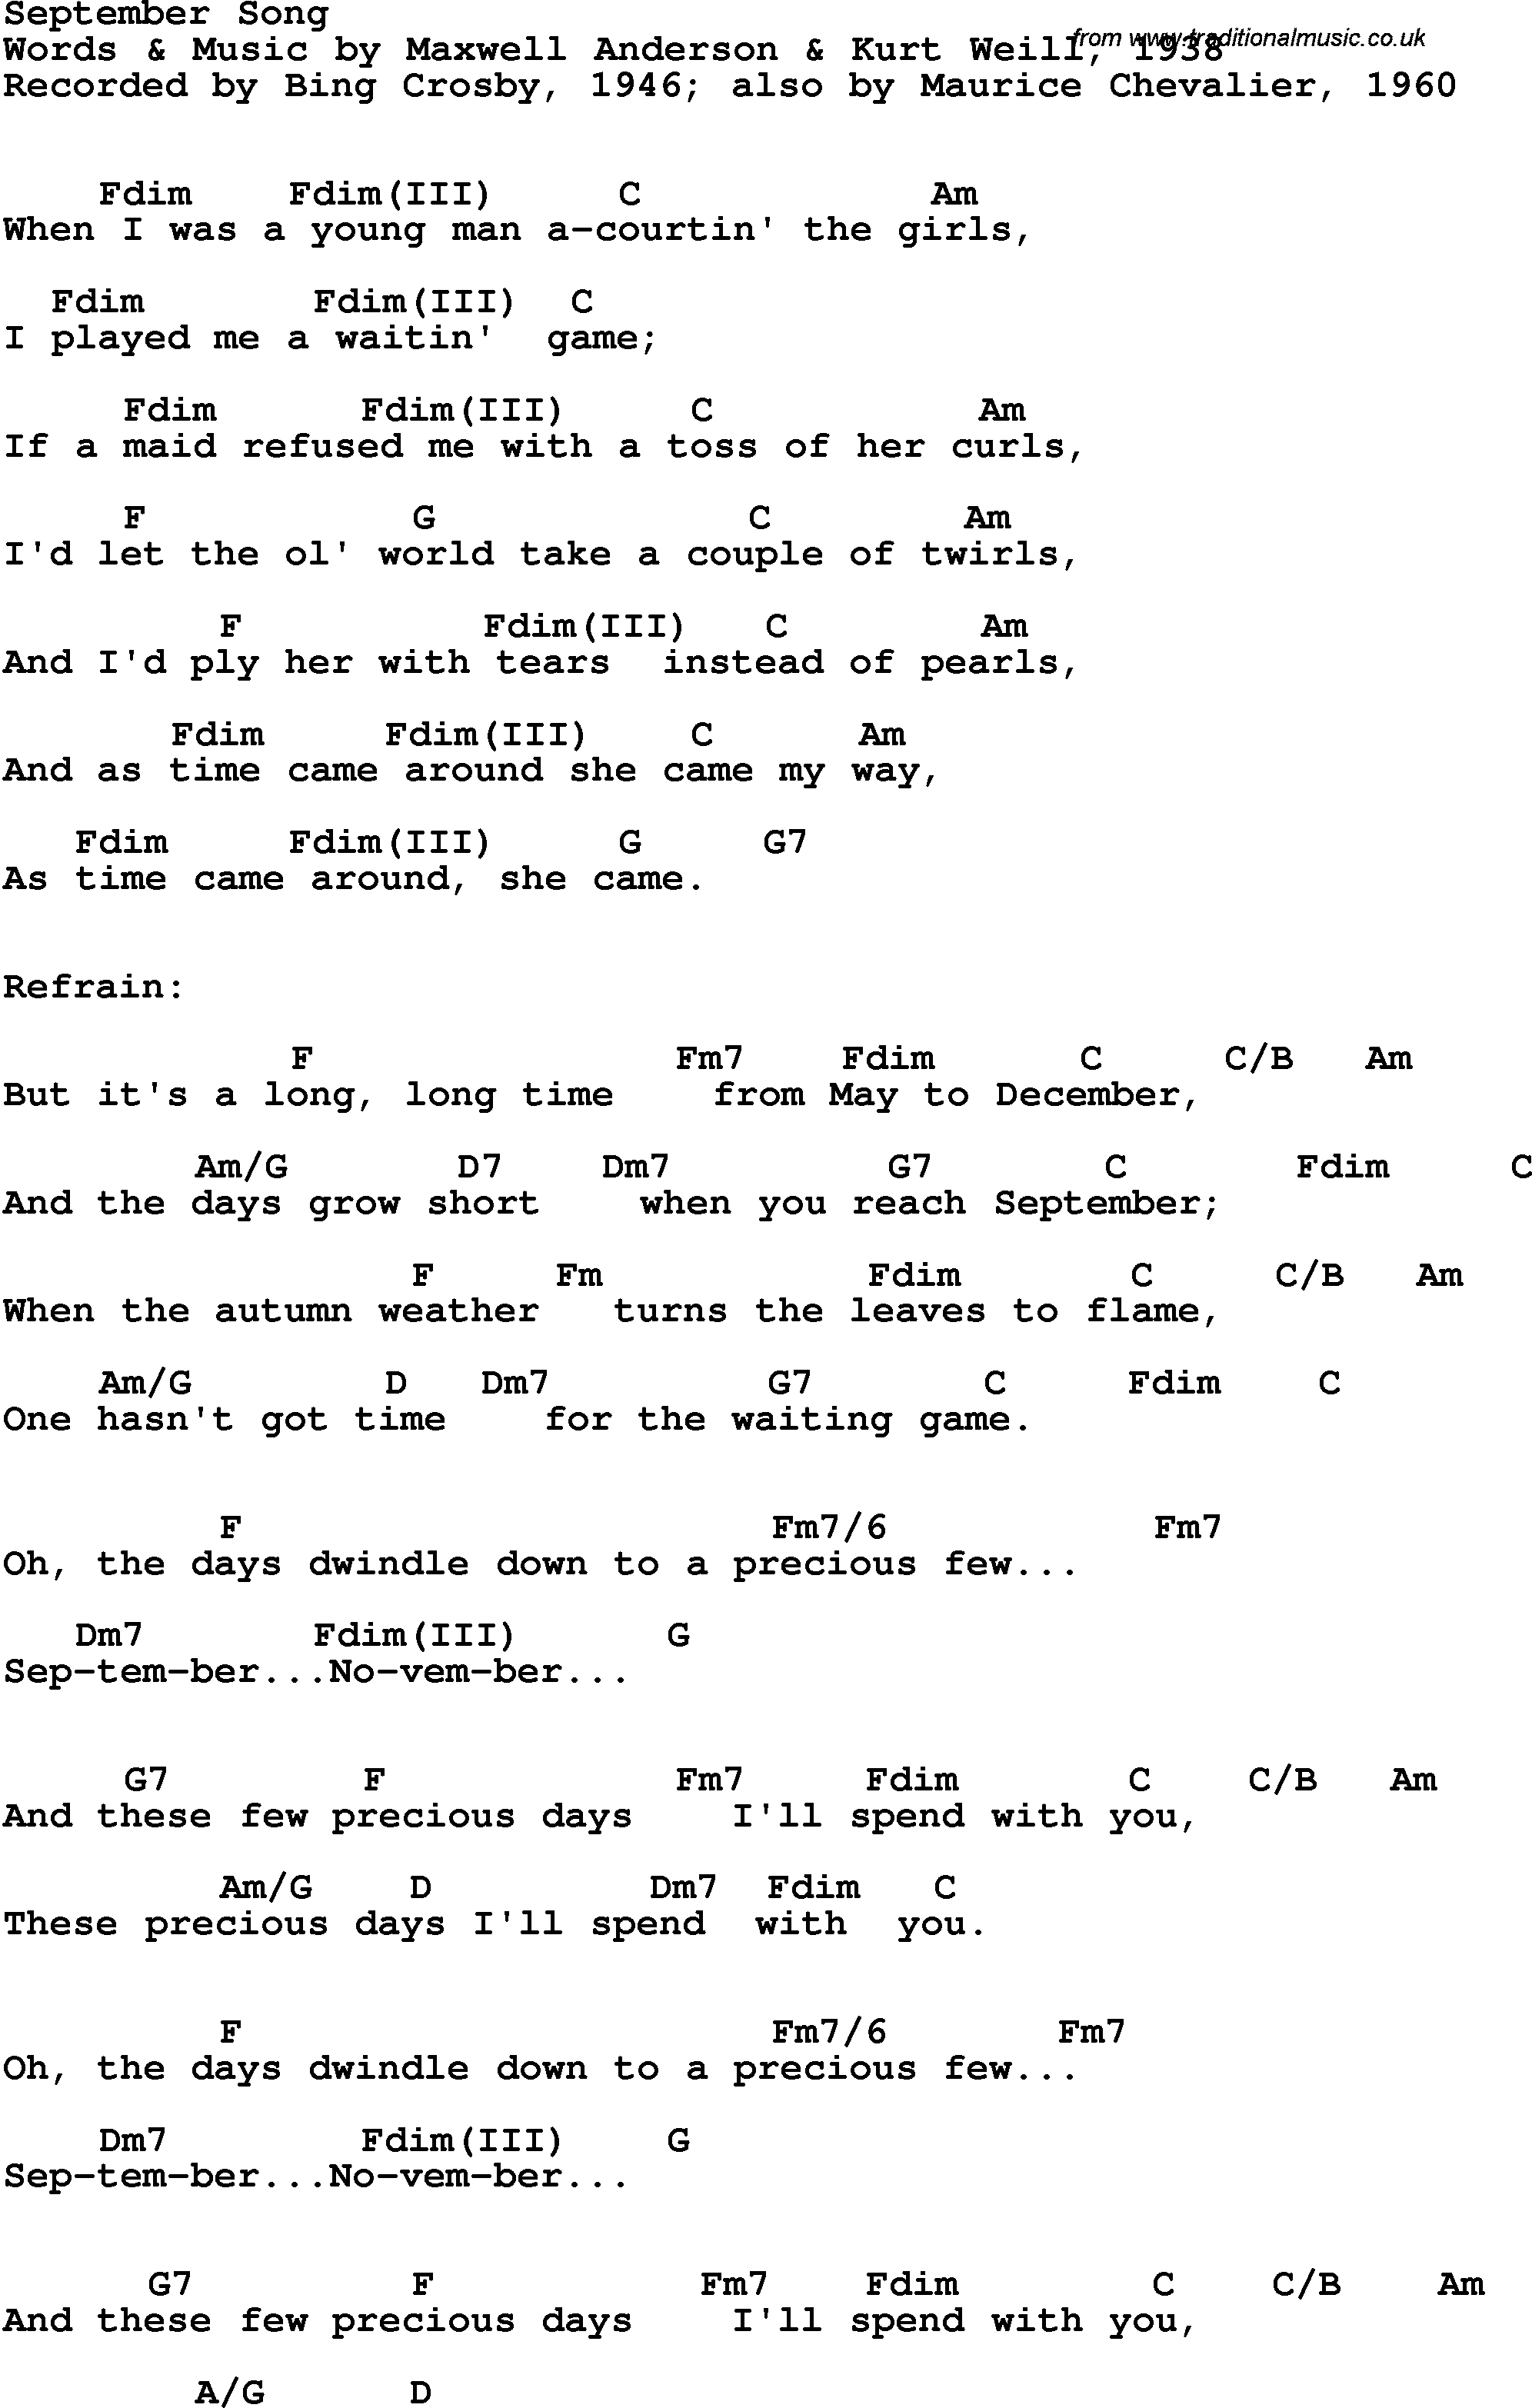 Relatie nakoming maandelijks Song lyrics with guitar chords for September Song - Bing Crosby, 1946